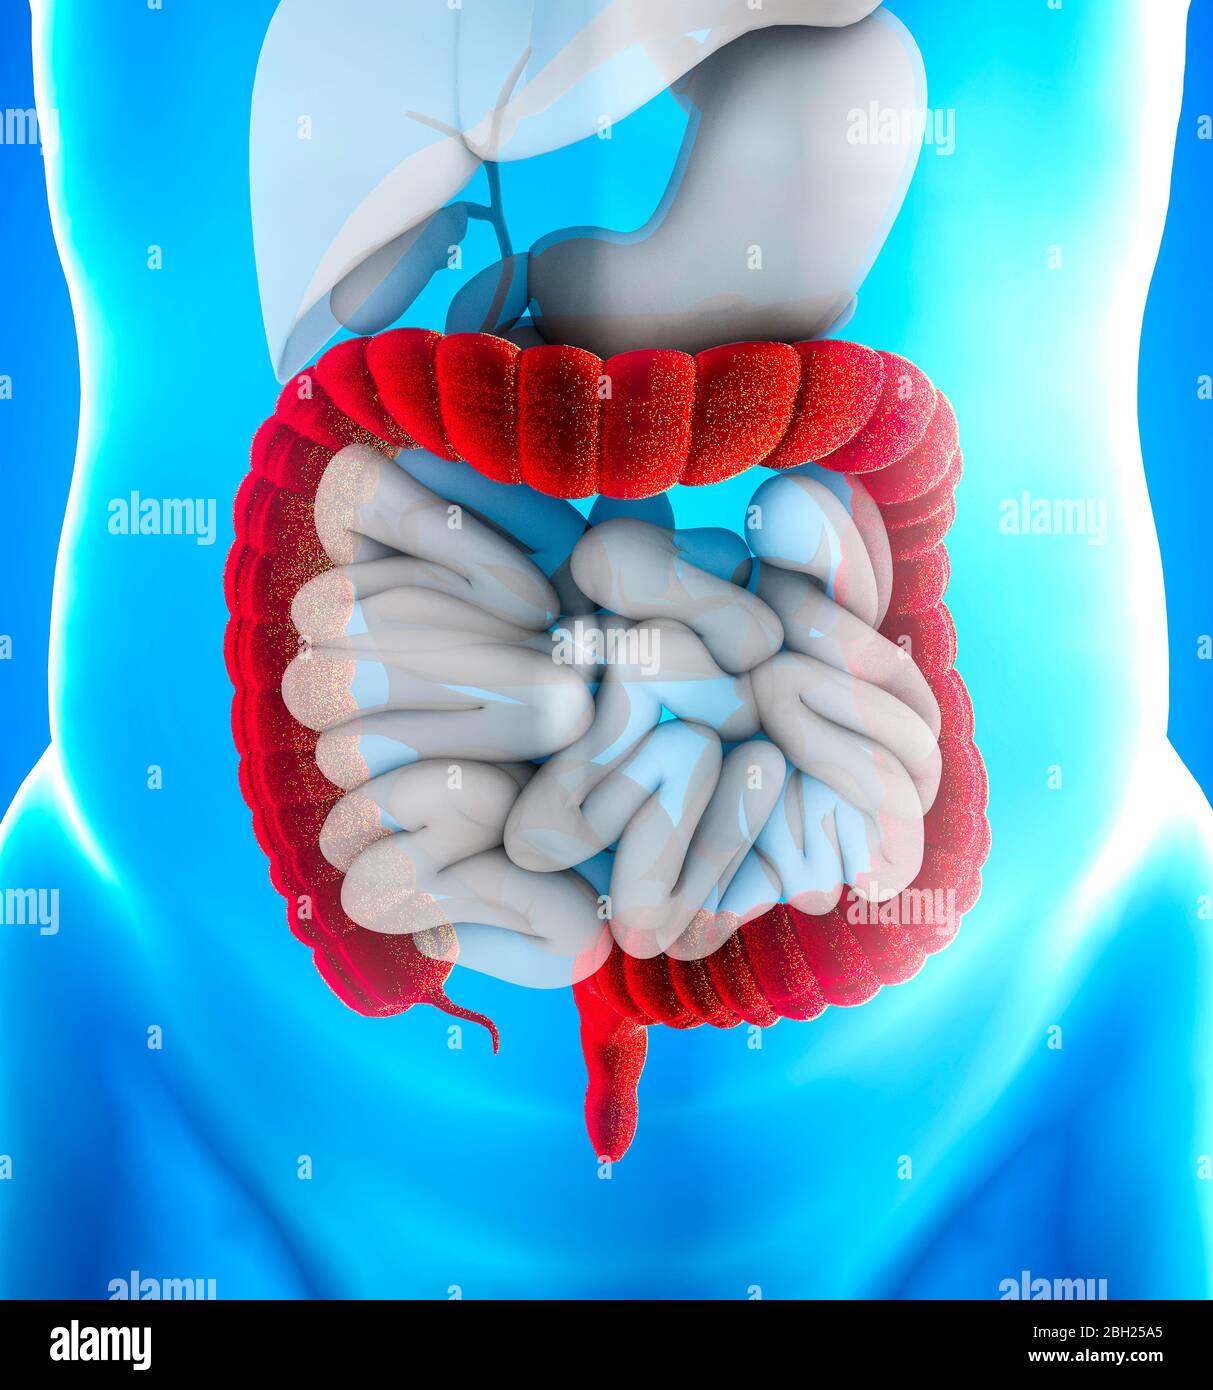 L'intestin grêle, également connu sous le nom de gros intestin, est la dernière partie du tractus gastro-intestinal et du système digestif. Le côlon Banque D'Images